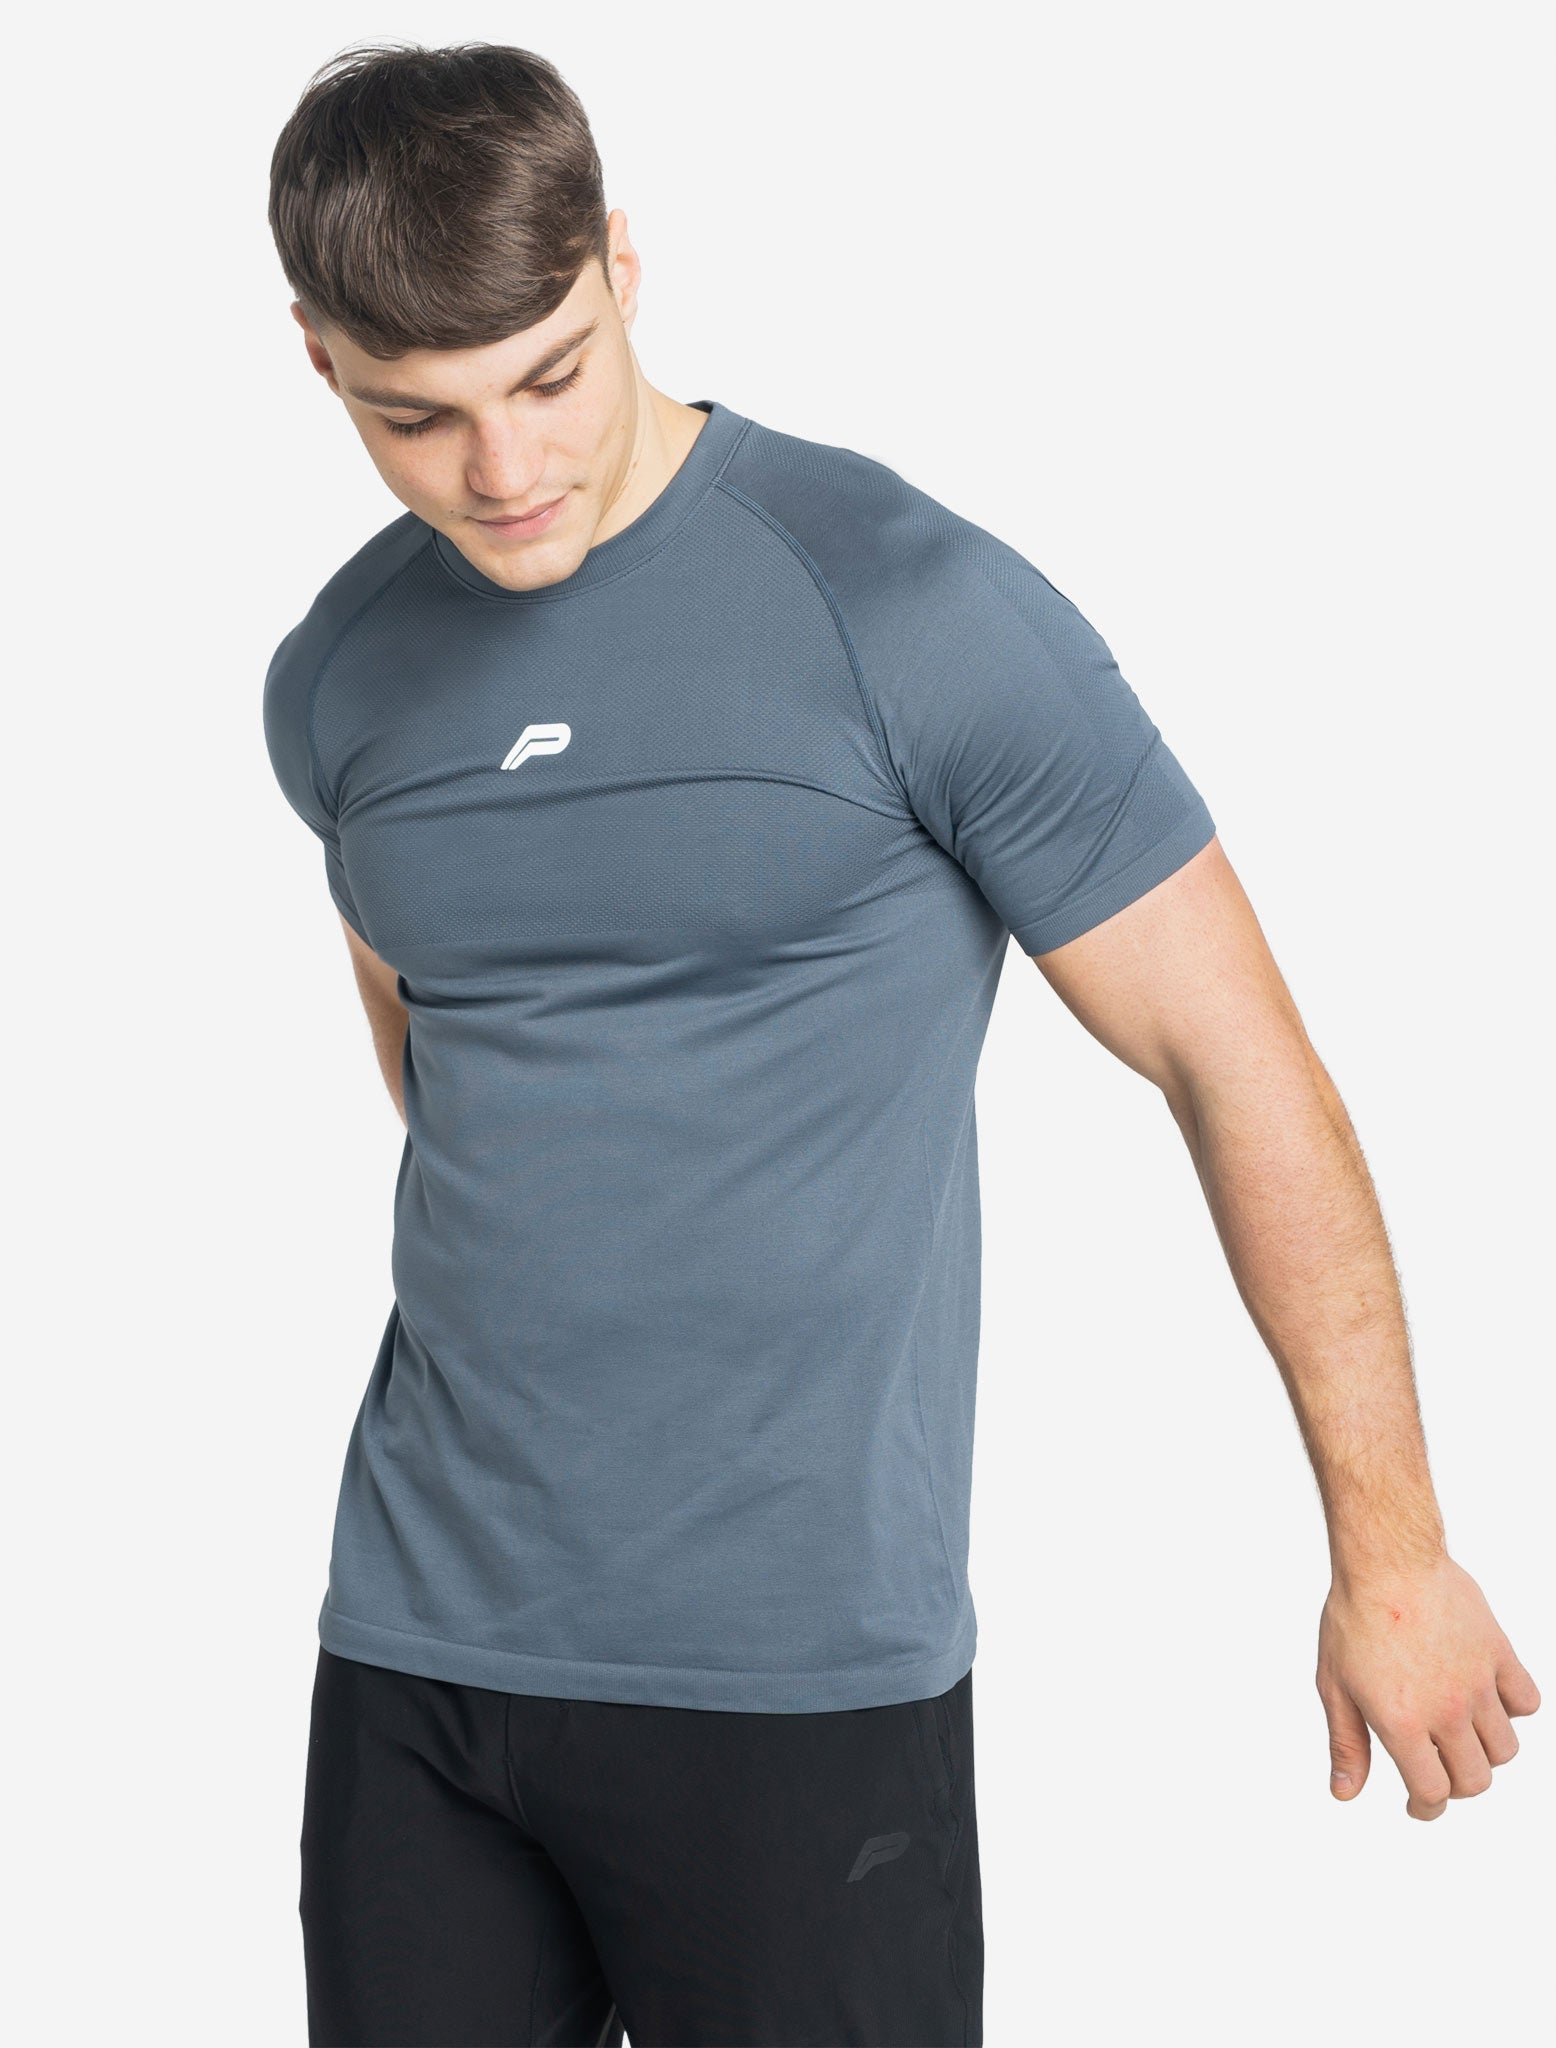 Men's Seamless T-Shirt | Deep Blue | Pursue Fitness